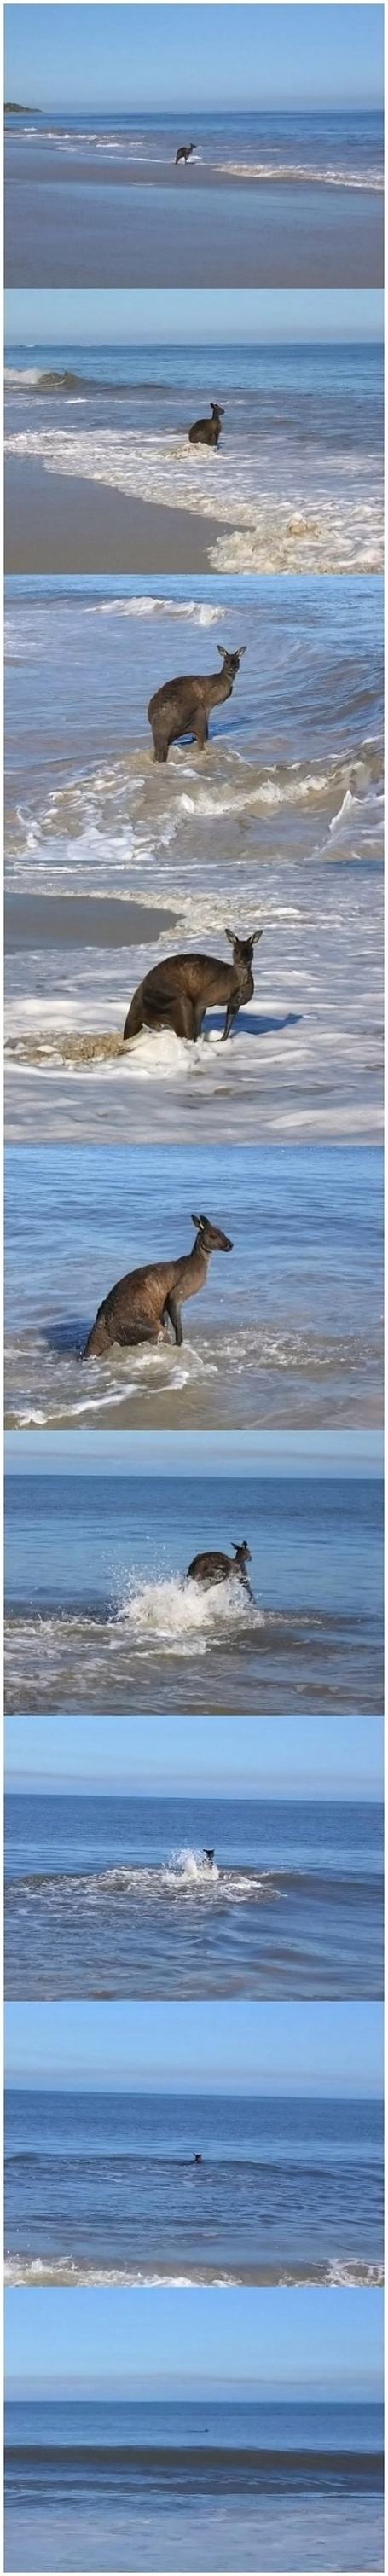 Obrázek -Kangaroo sets off on a voyage-      27.10.2012